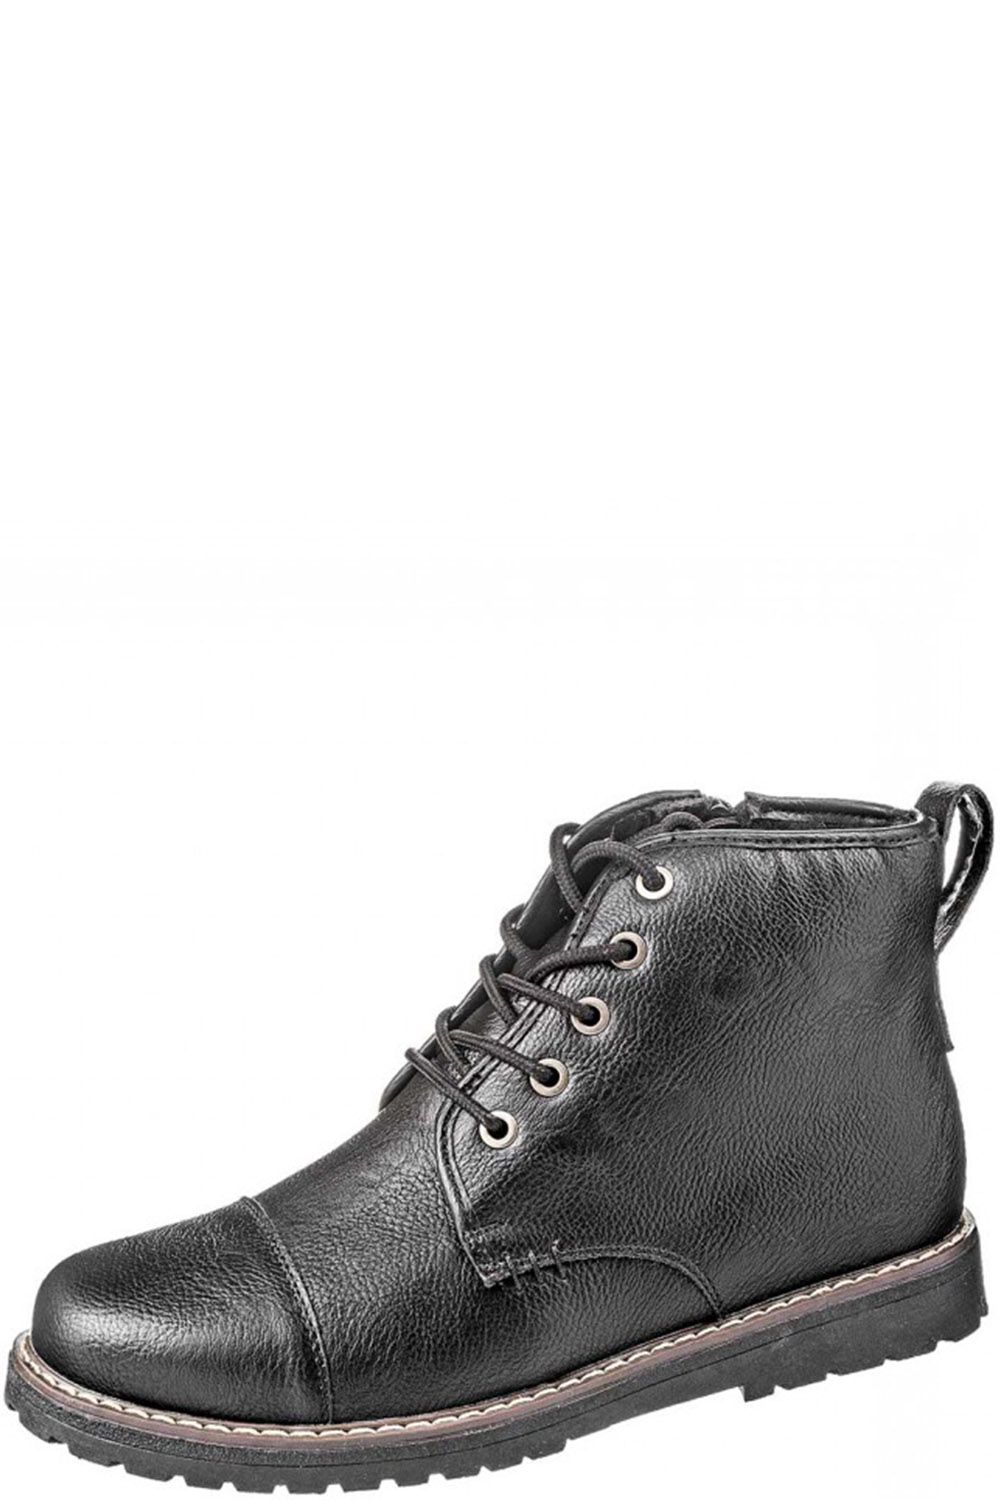 Ботинки Keddo, размер 40, цвет черный 568878/01-01 - фото 1